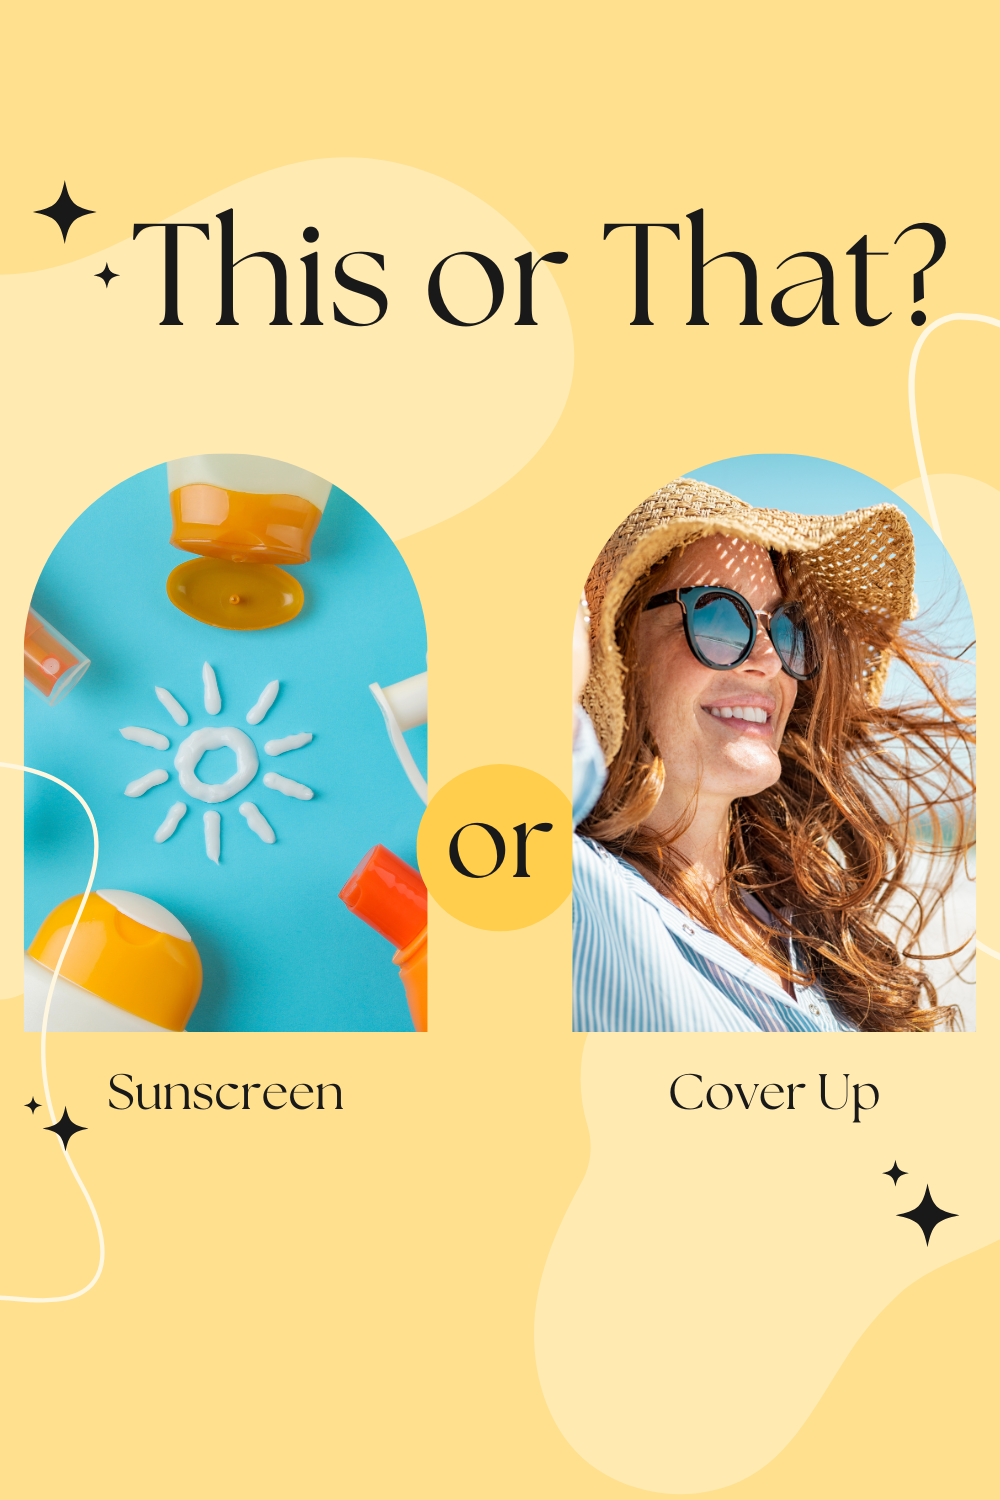 Do I really need Sunscreen everyday?